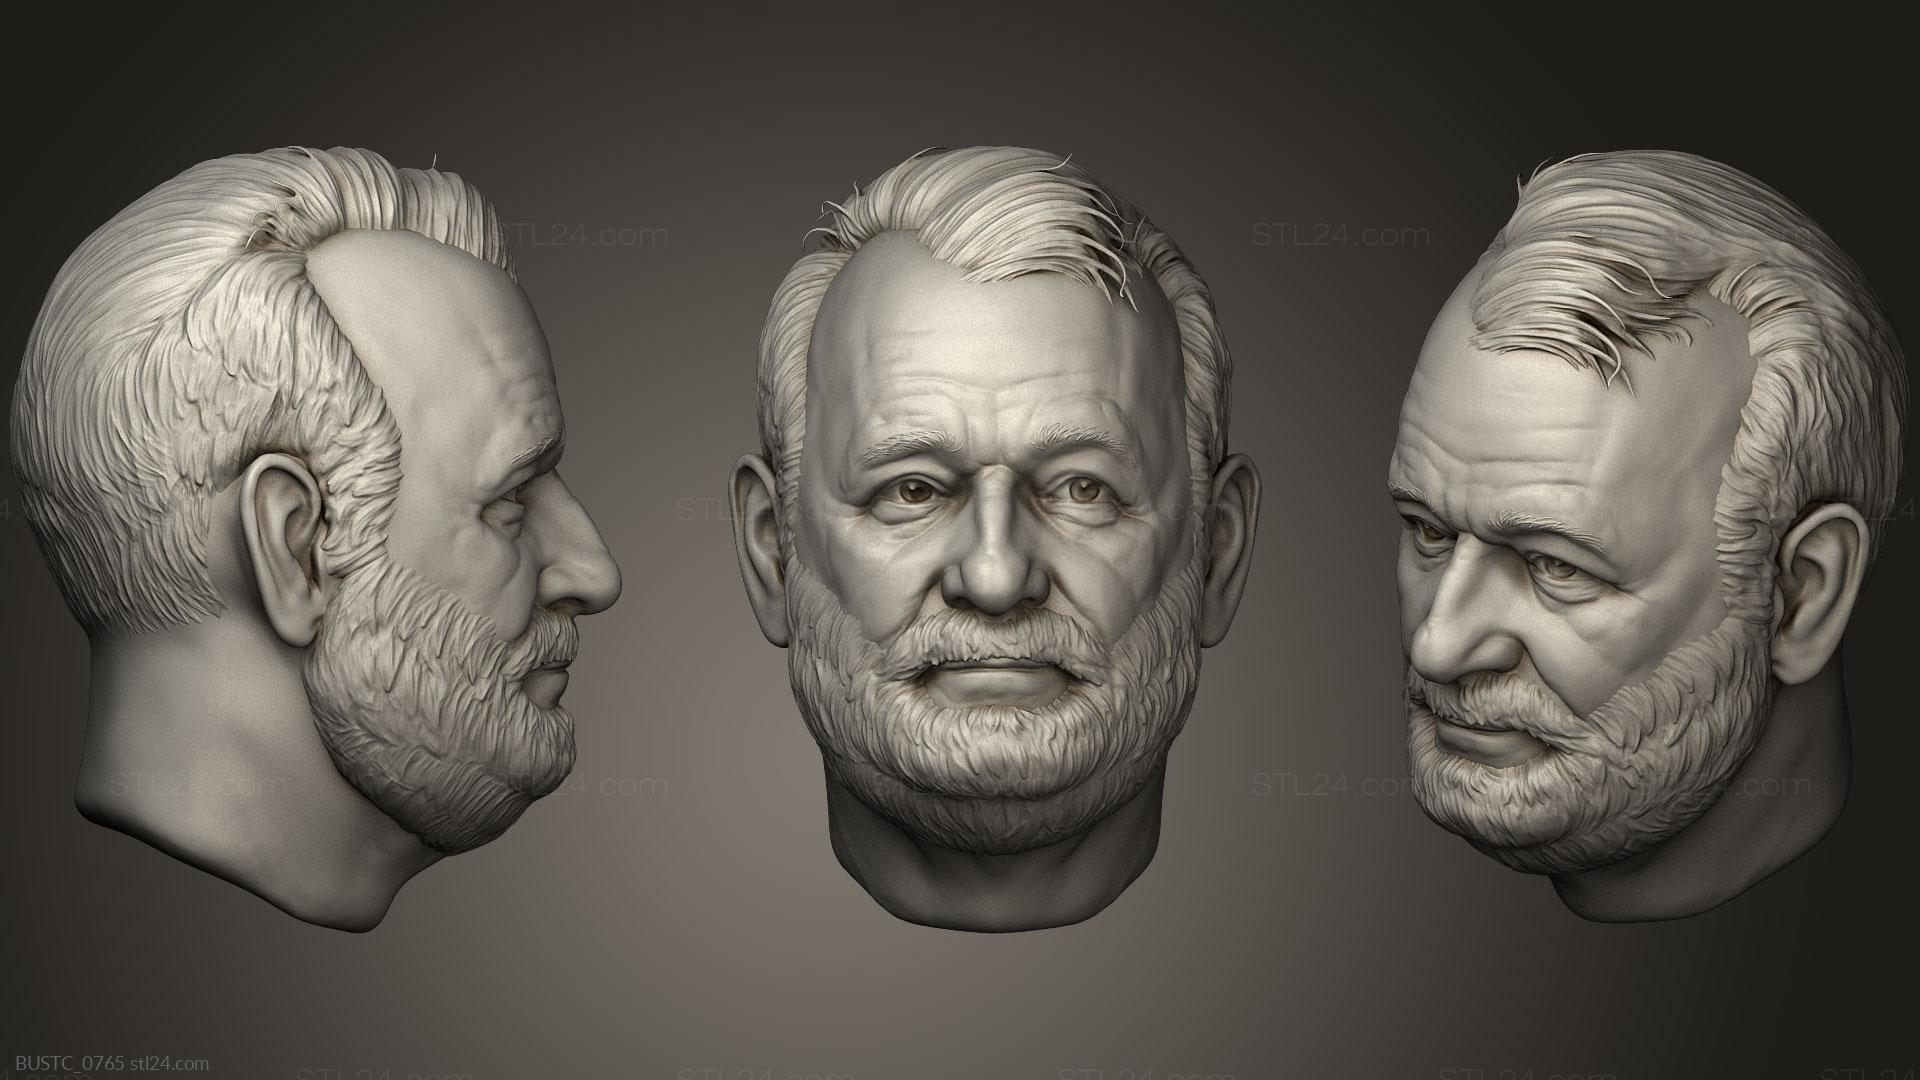 Бюсты и барельефы известных личностей (Билл Мюррей, BUSTC_0765) 3D модель для ЧПУ станка